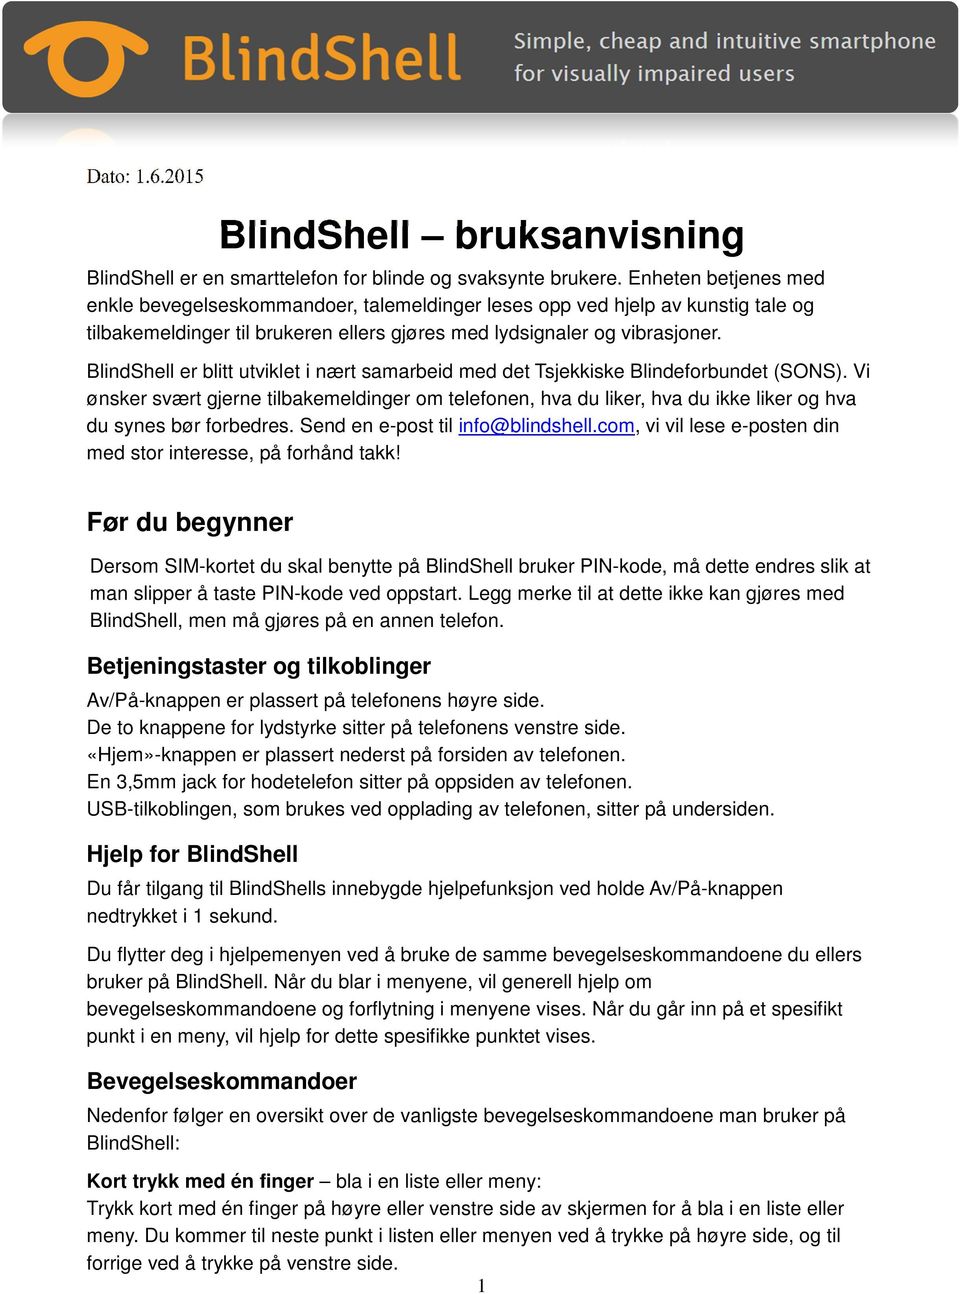 BlindShell er blitt utviklet i nært samarbeid med det Tsjekkiske Blindeforbundet (SONS).